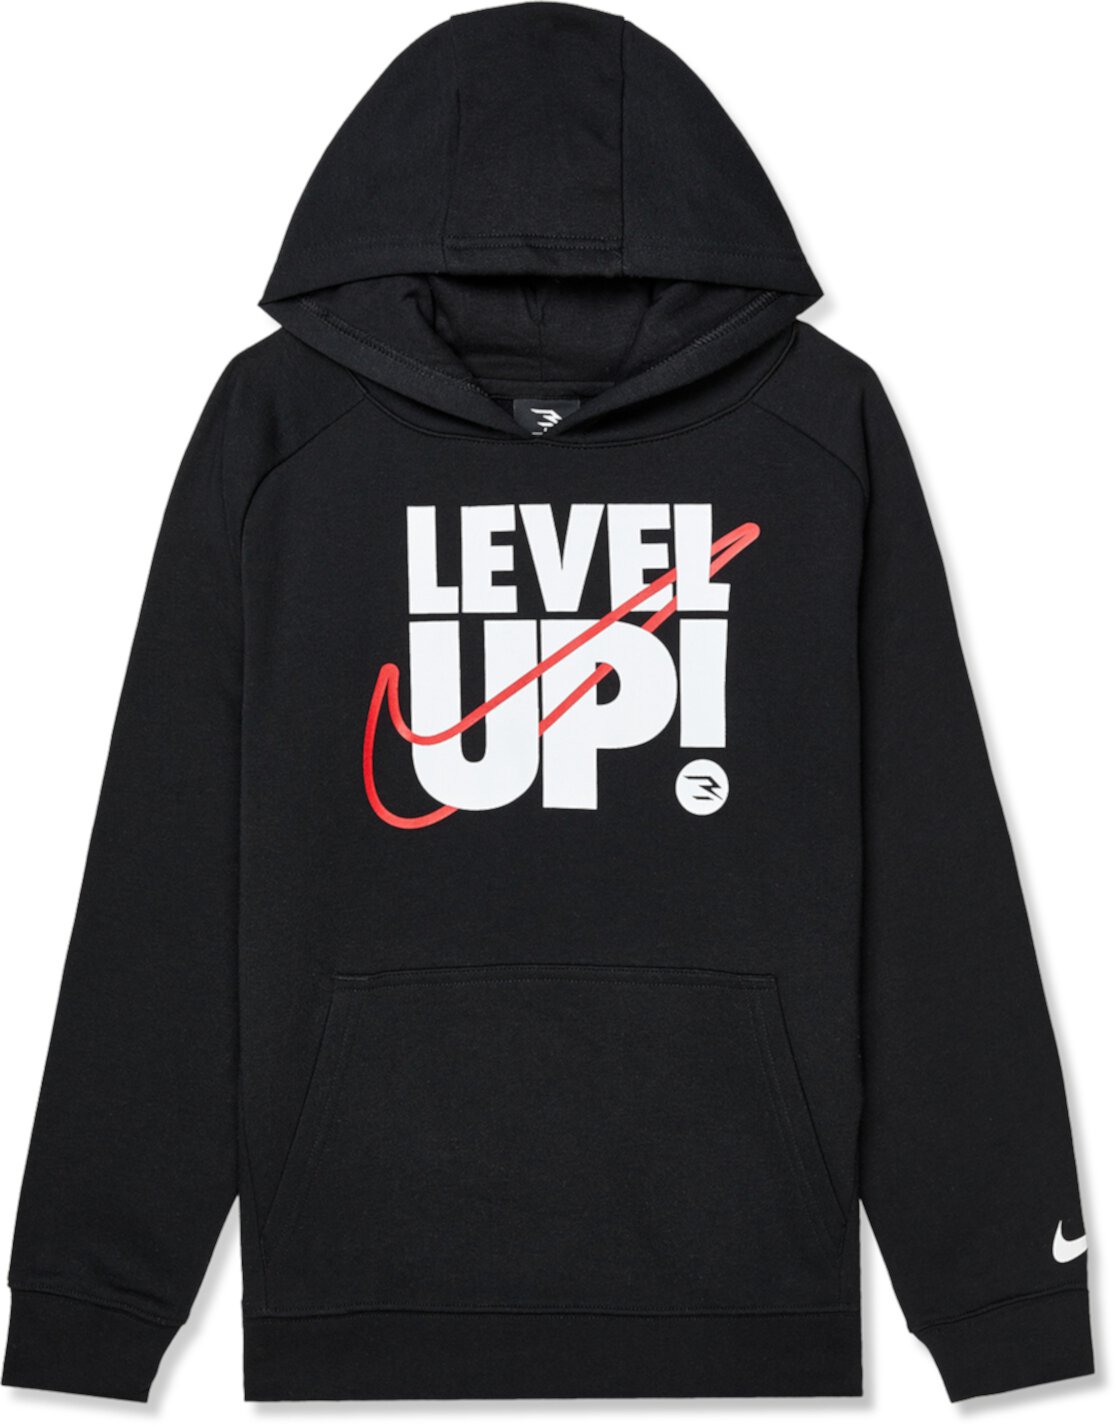 Пуловер с капюшоном Level Up (для больших детей) Nike 3BRAND Kids